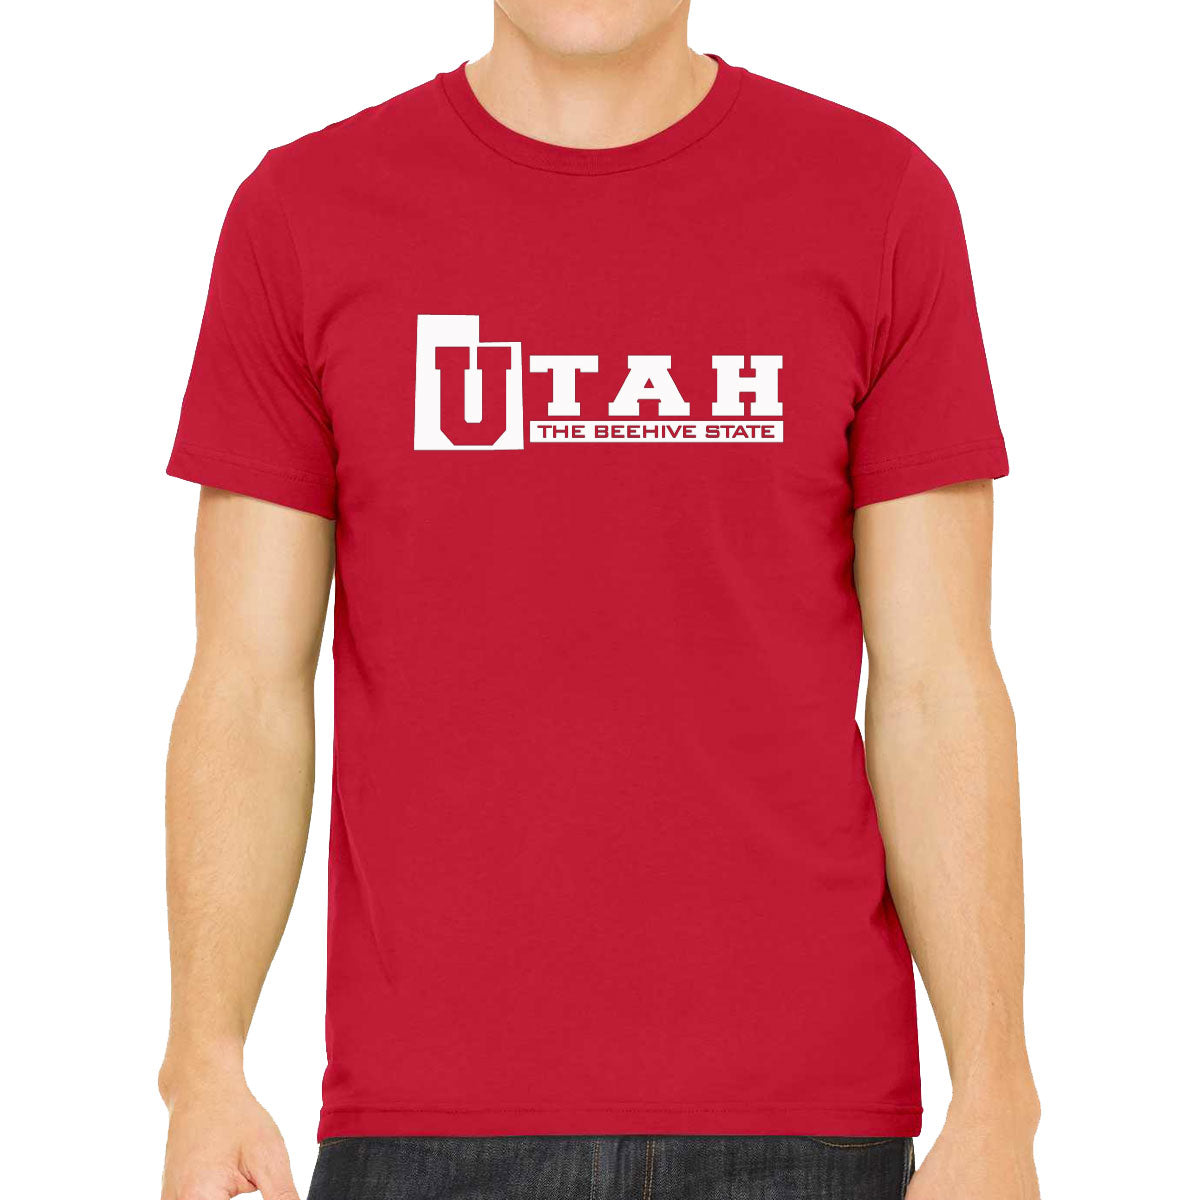 Utah The Beehive State Men's T-shirt